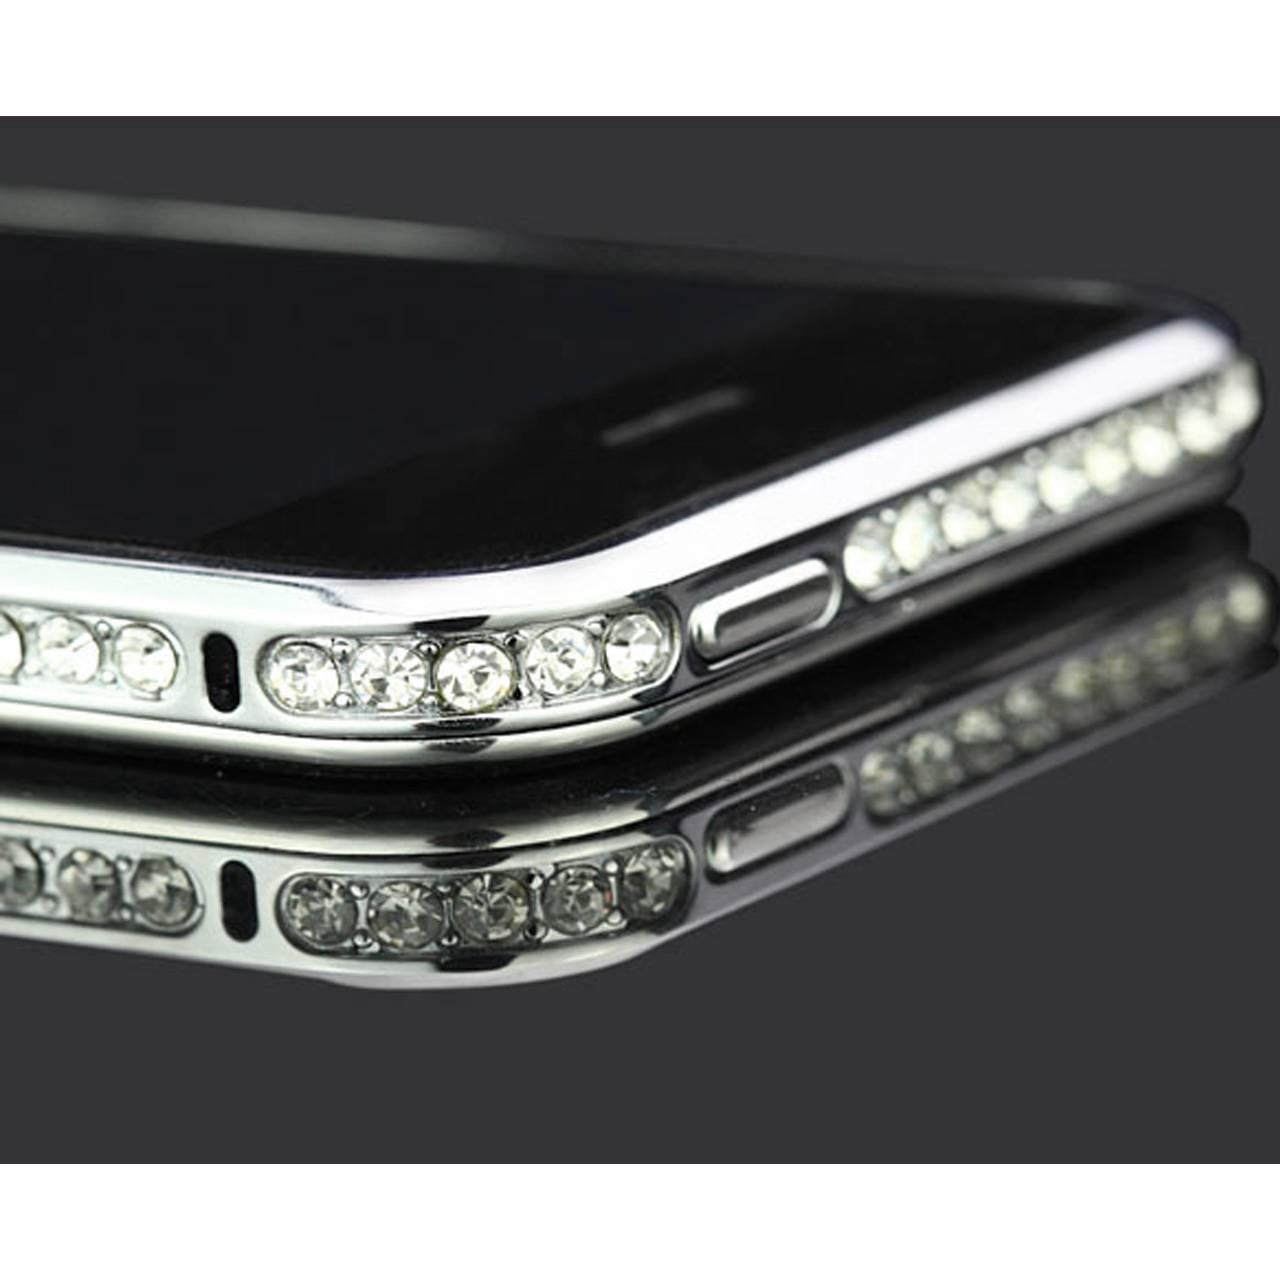 ... -Deluxe-Metal-Aluminium-Rose-Gold-Case-Bumper-For-iPhone-4-4S-5-5S